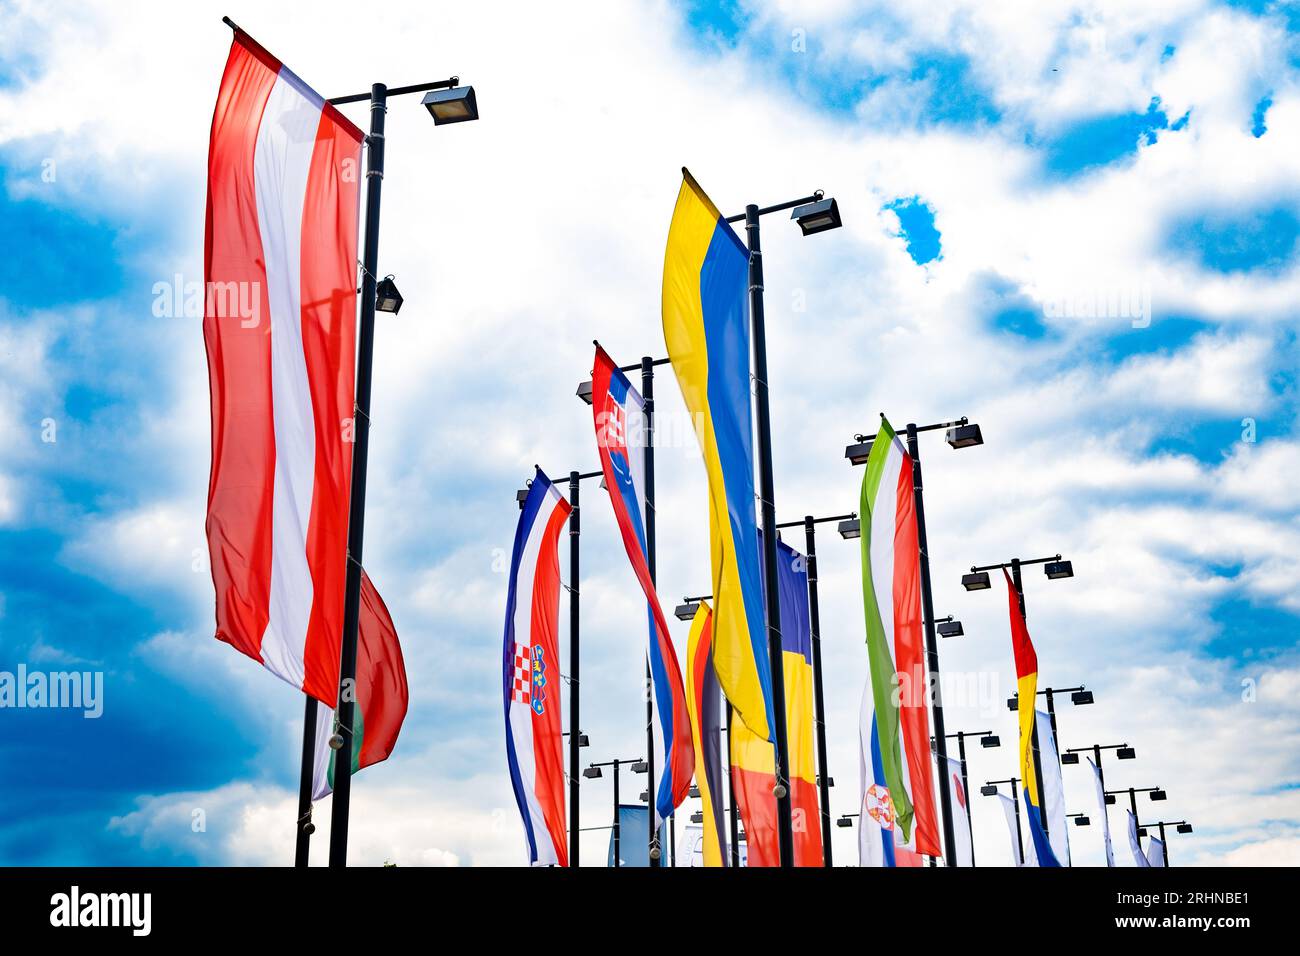 De nombreux drapeaux de l'Autriche, de l'Ukraine, de la Croatie, de la Roumanie et d'autres pays Banque D'Images